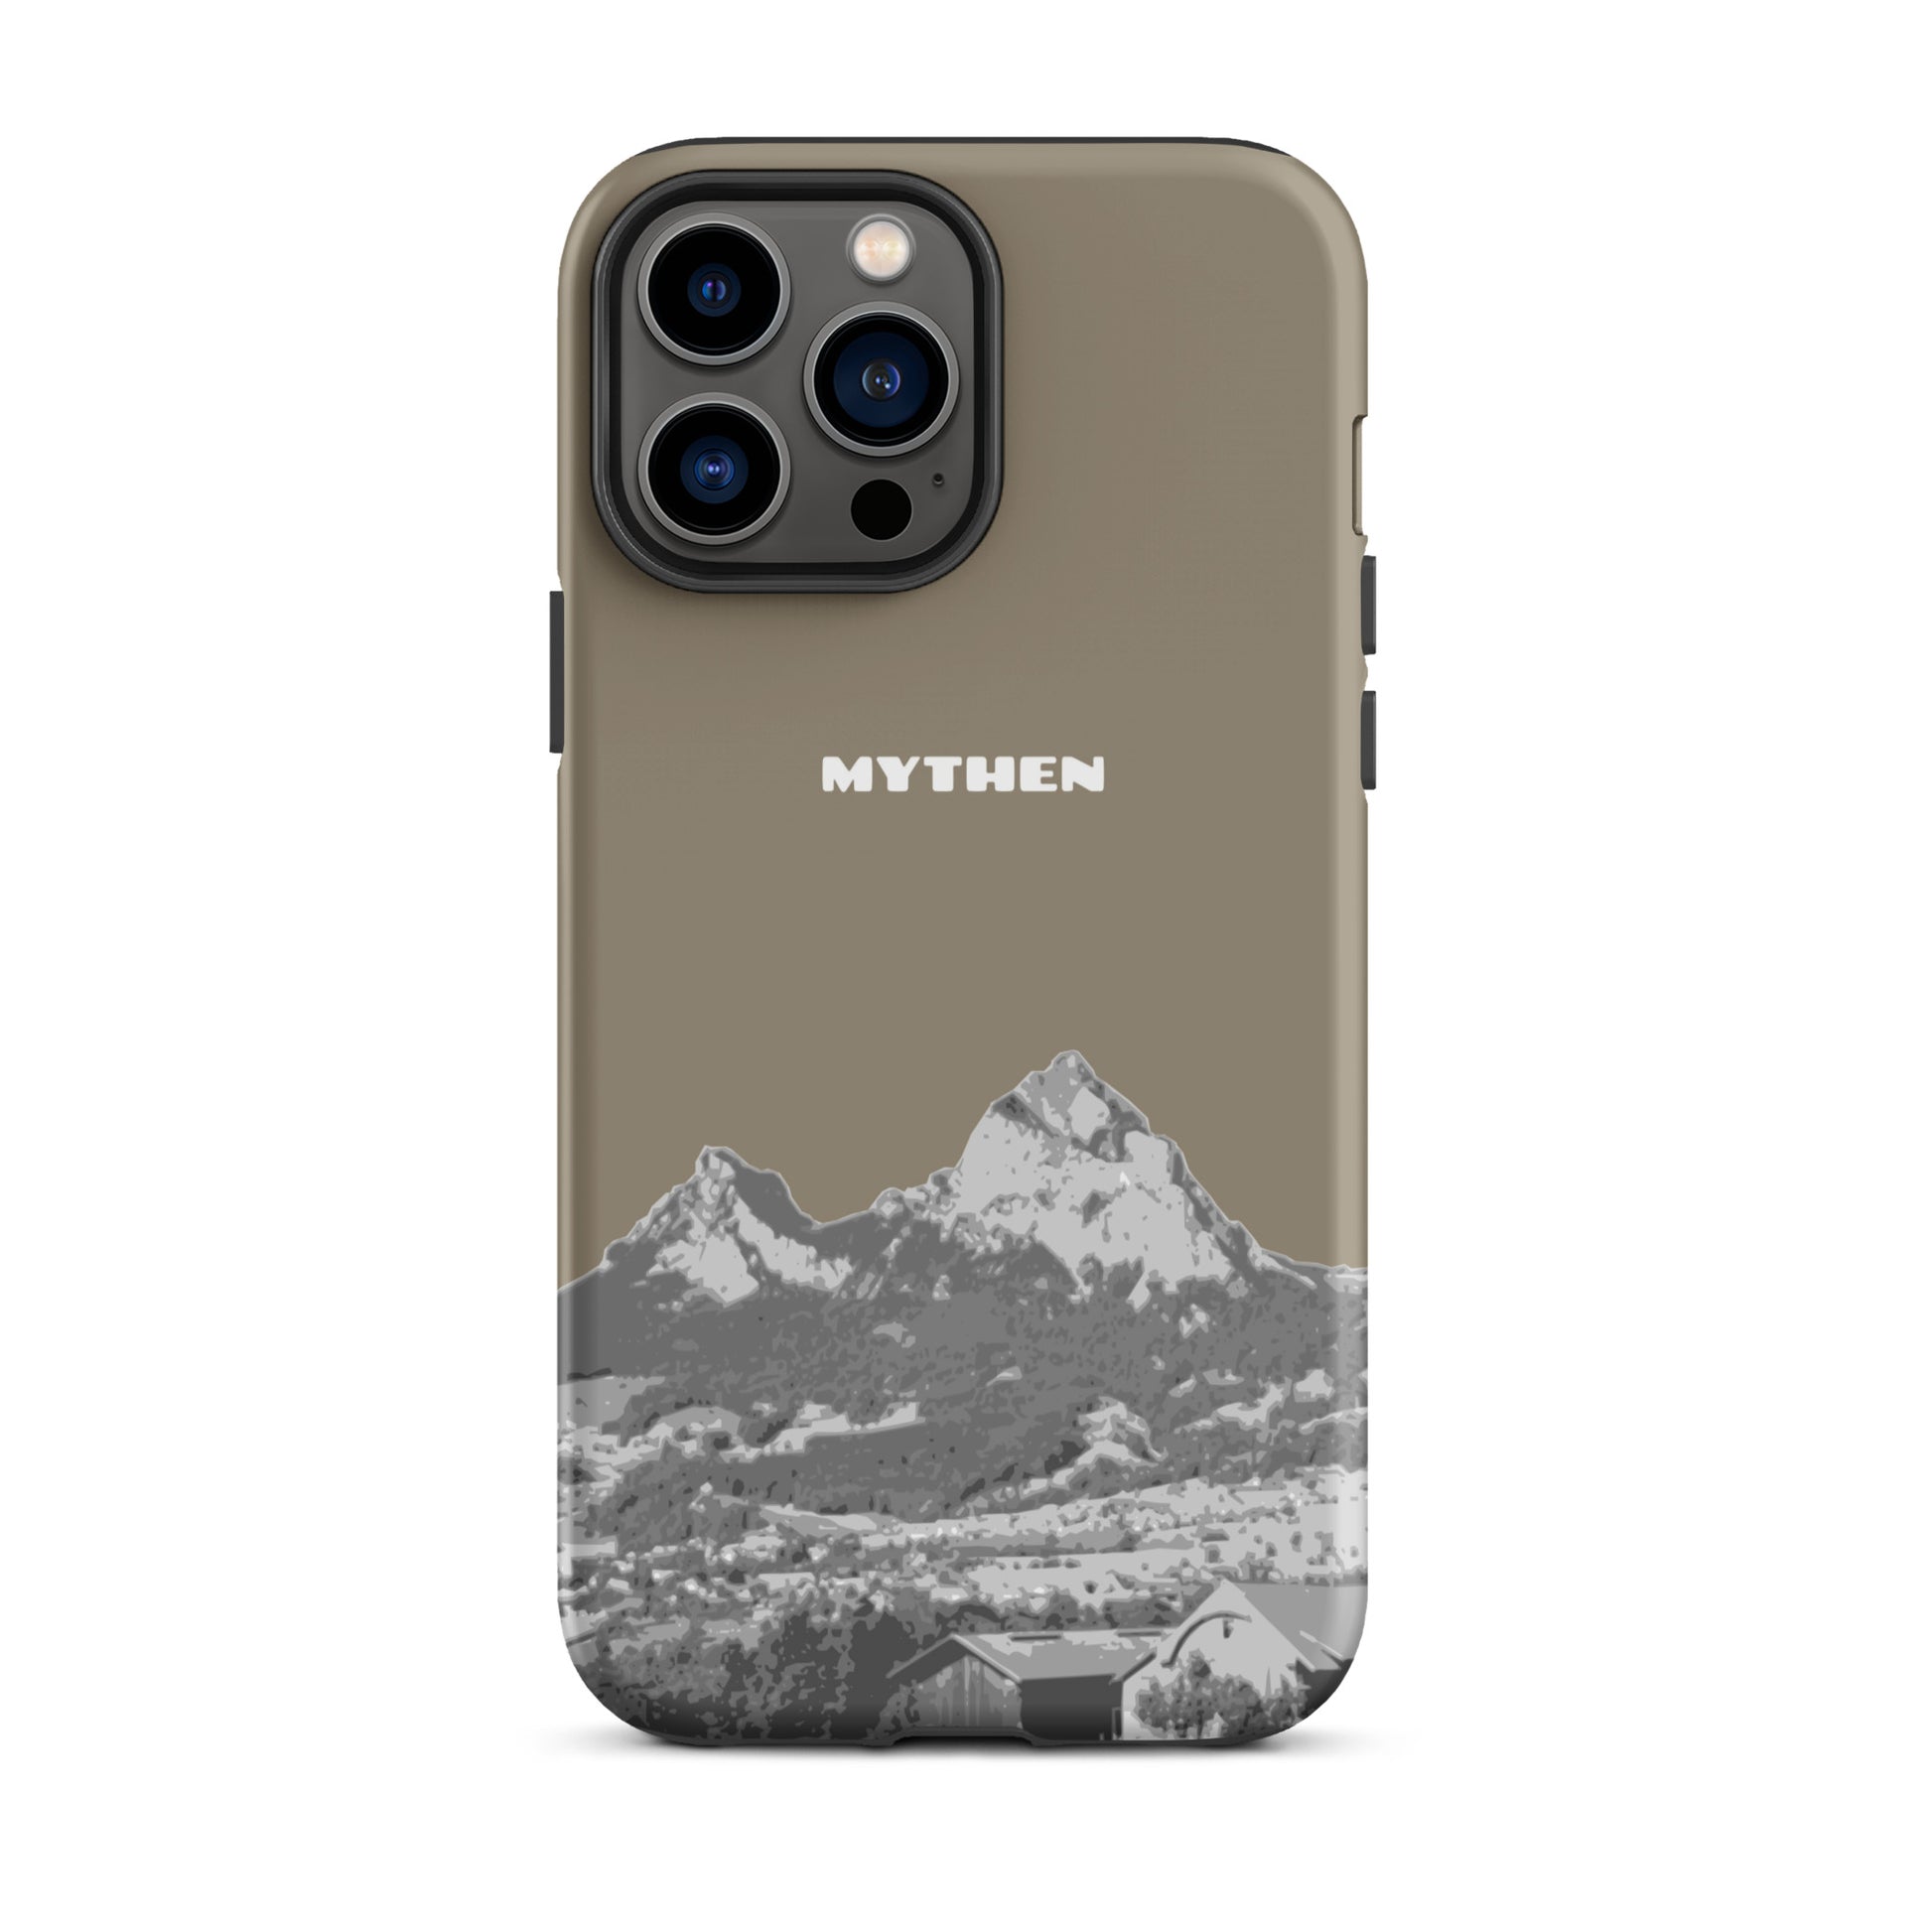 Hülle für das iPhone 13 Pro Max von Apple in der Farbe Graubraun, dass den Grossen Mythen und den Kleinen Mythen bei Schwyz zeigt. 